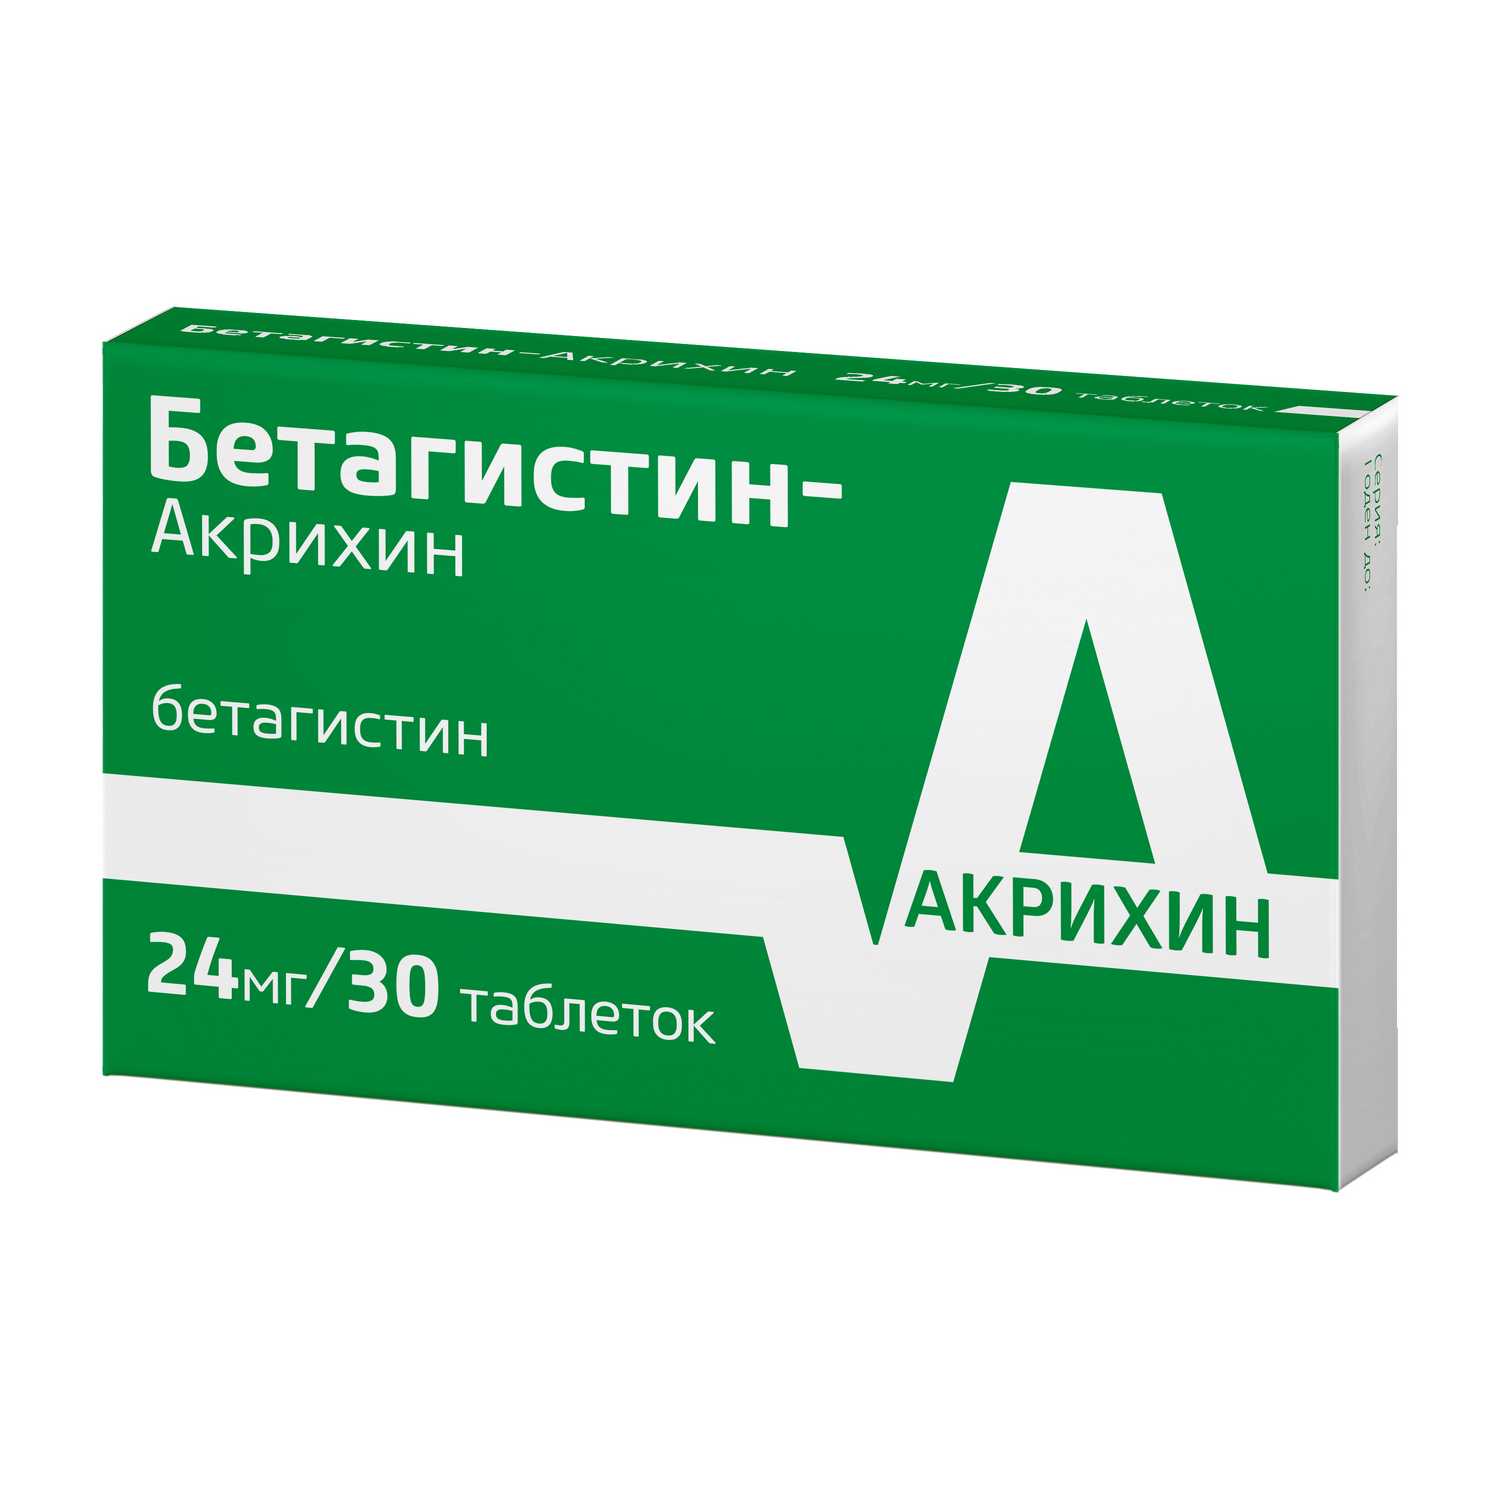 Купить Бетагистин-акрихин таб 24мг 30 шт (бетагистин) по выгодной цене .